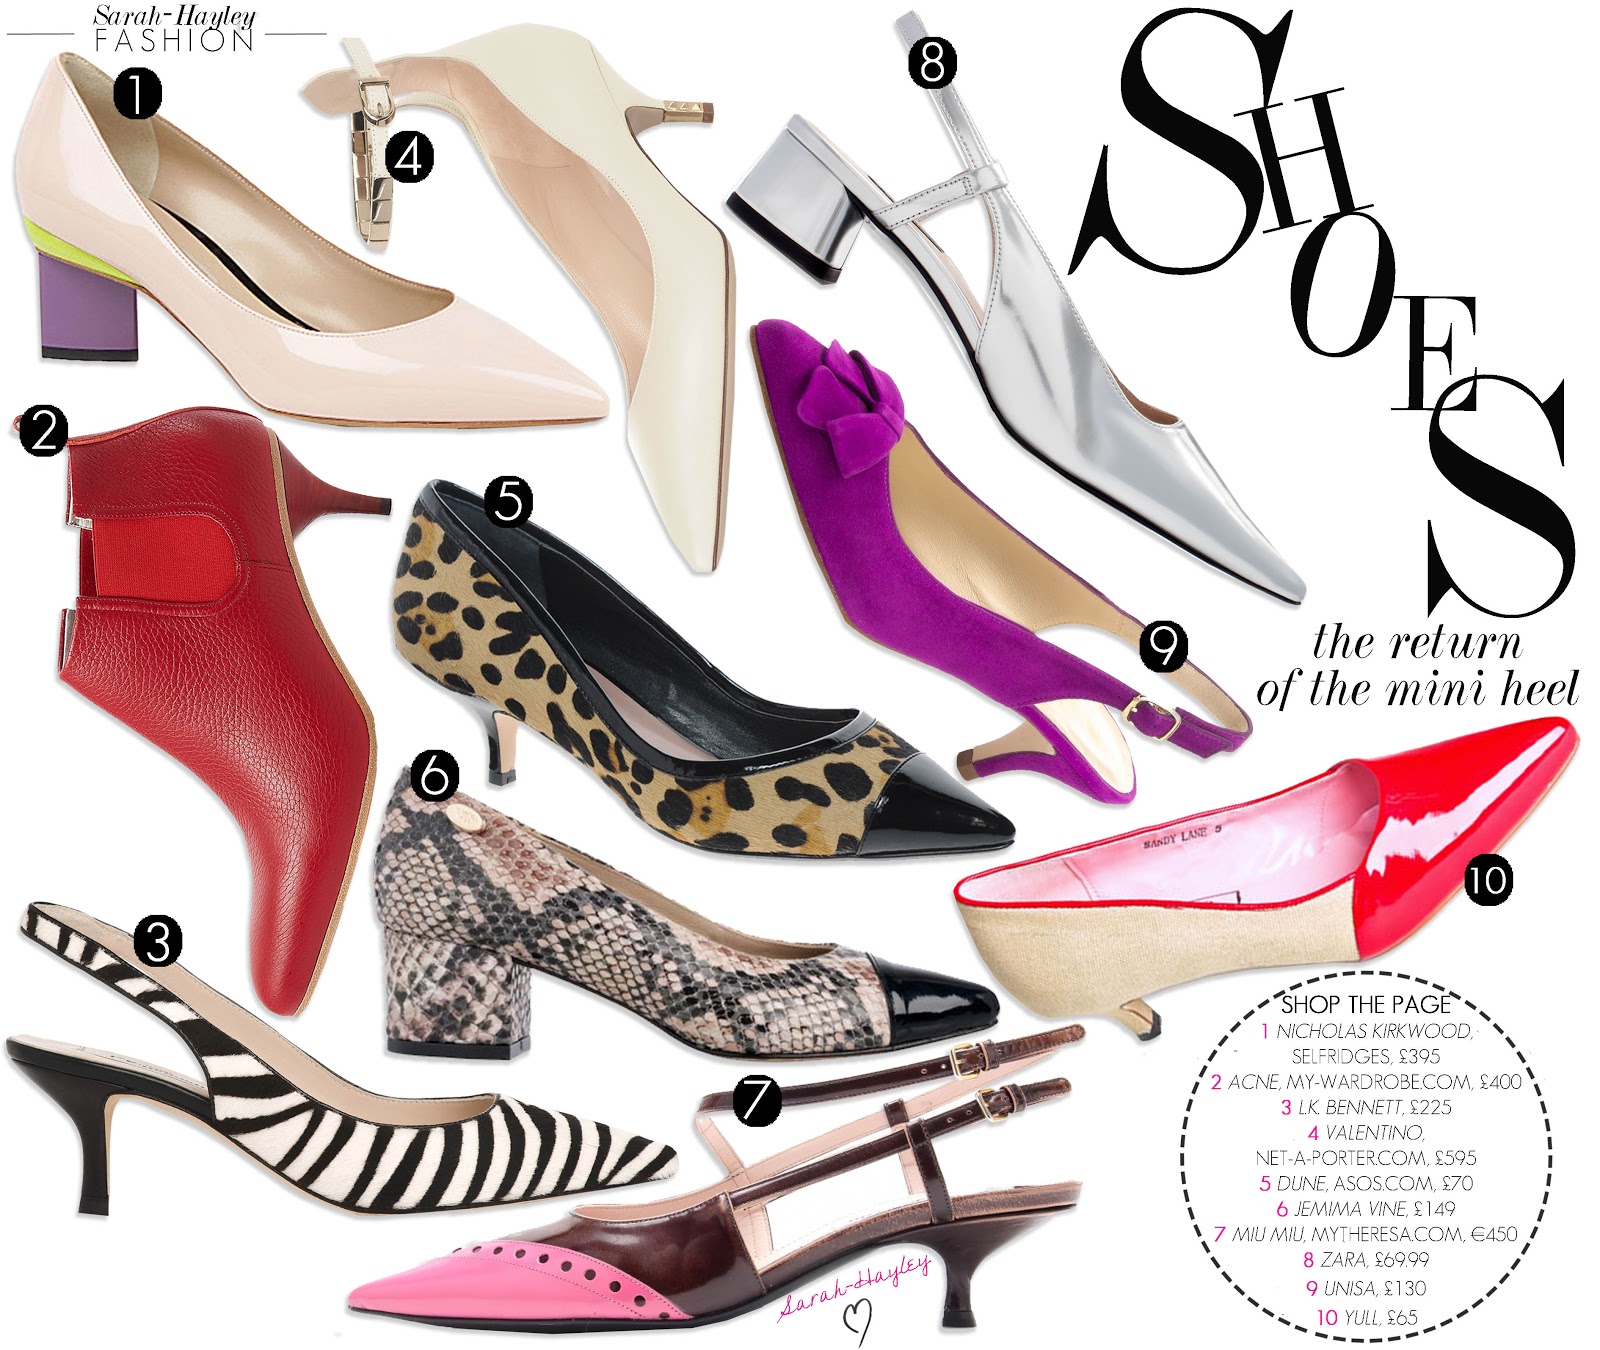 Trend - The new heel height: The Mini-Heel - by Sarah-Hayley Owen